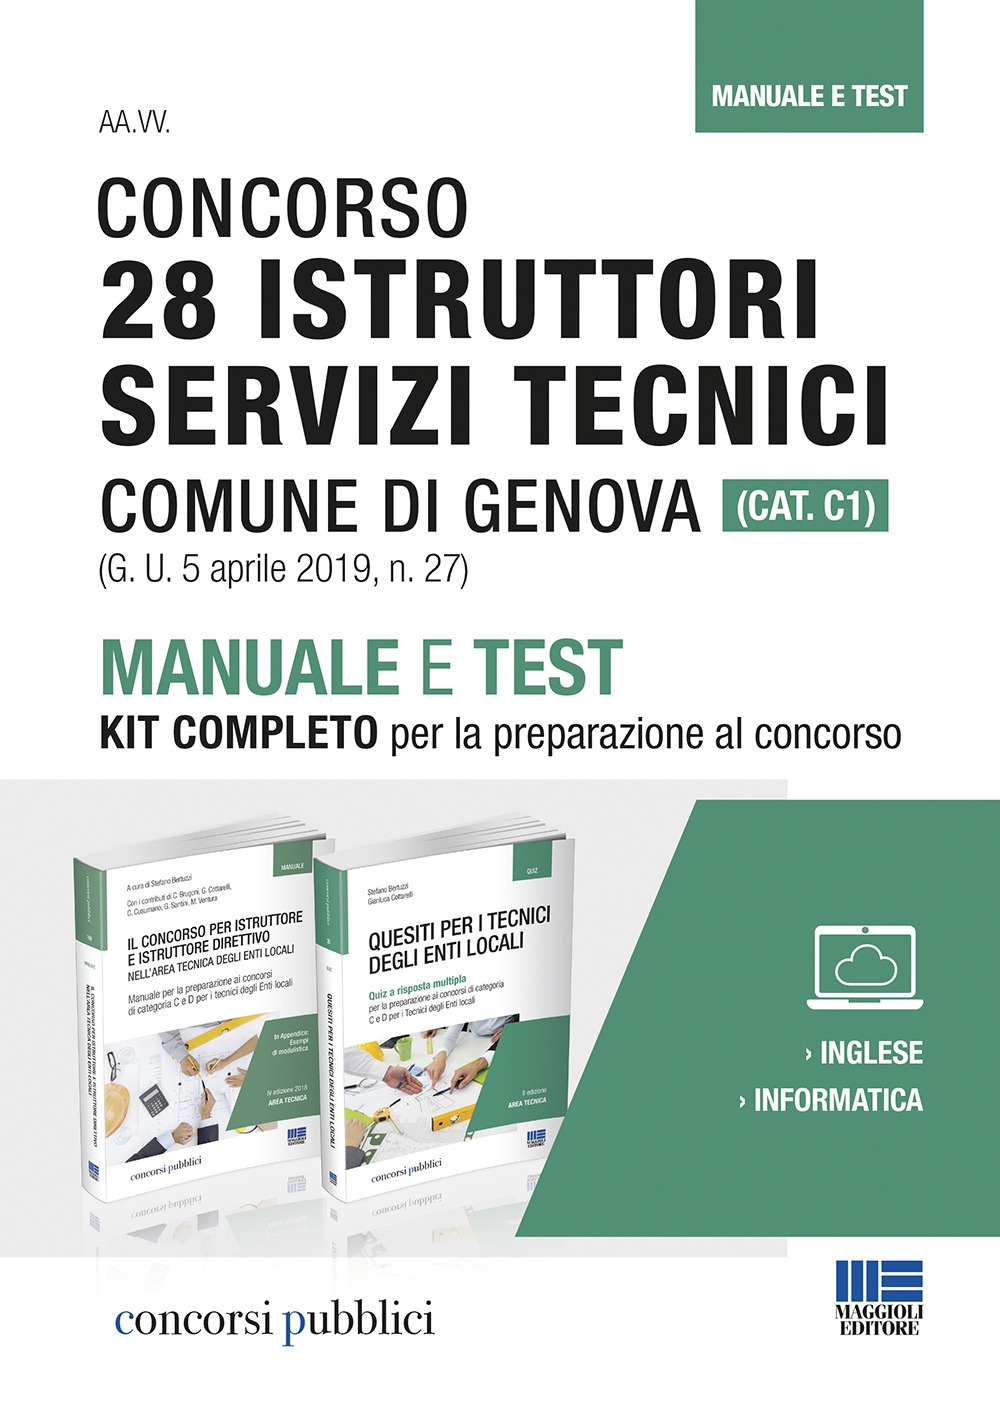 Concorso 28 istruttori servizi tecnici Comune di Genova (Cat. C1). Manuale e test. Kit completo per la preparazione al concorso